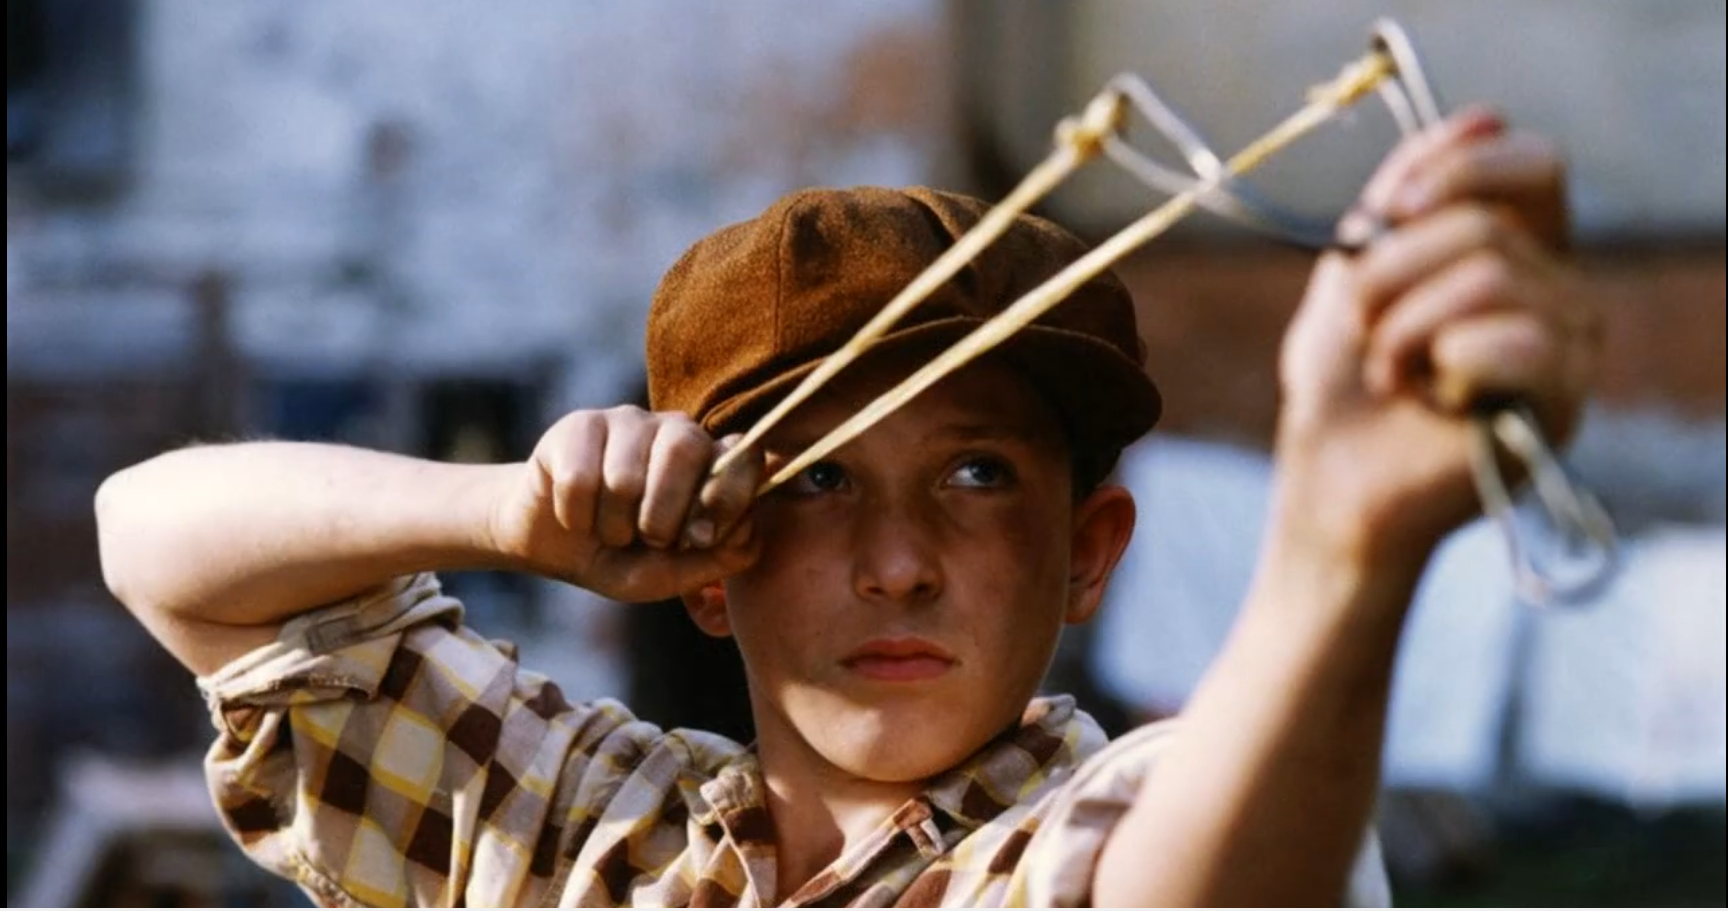 Пальчики шалуны. Рогатка Kådisbellan, 1993. Мальчик с рогаткой. Солдат с рогаткой.